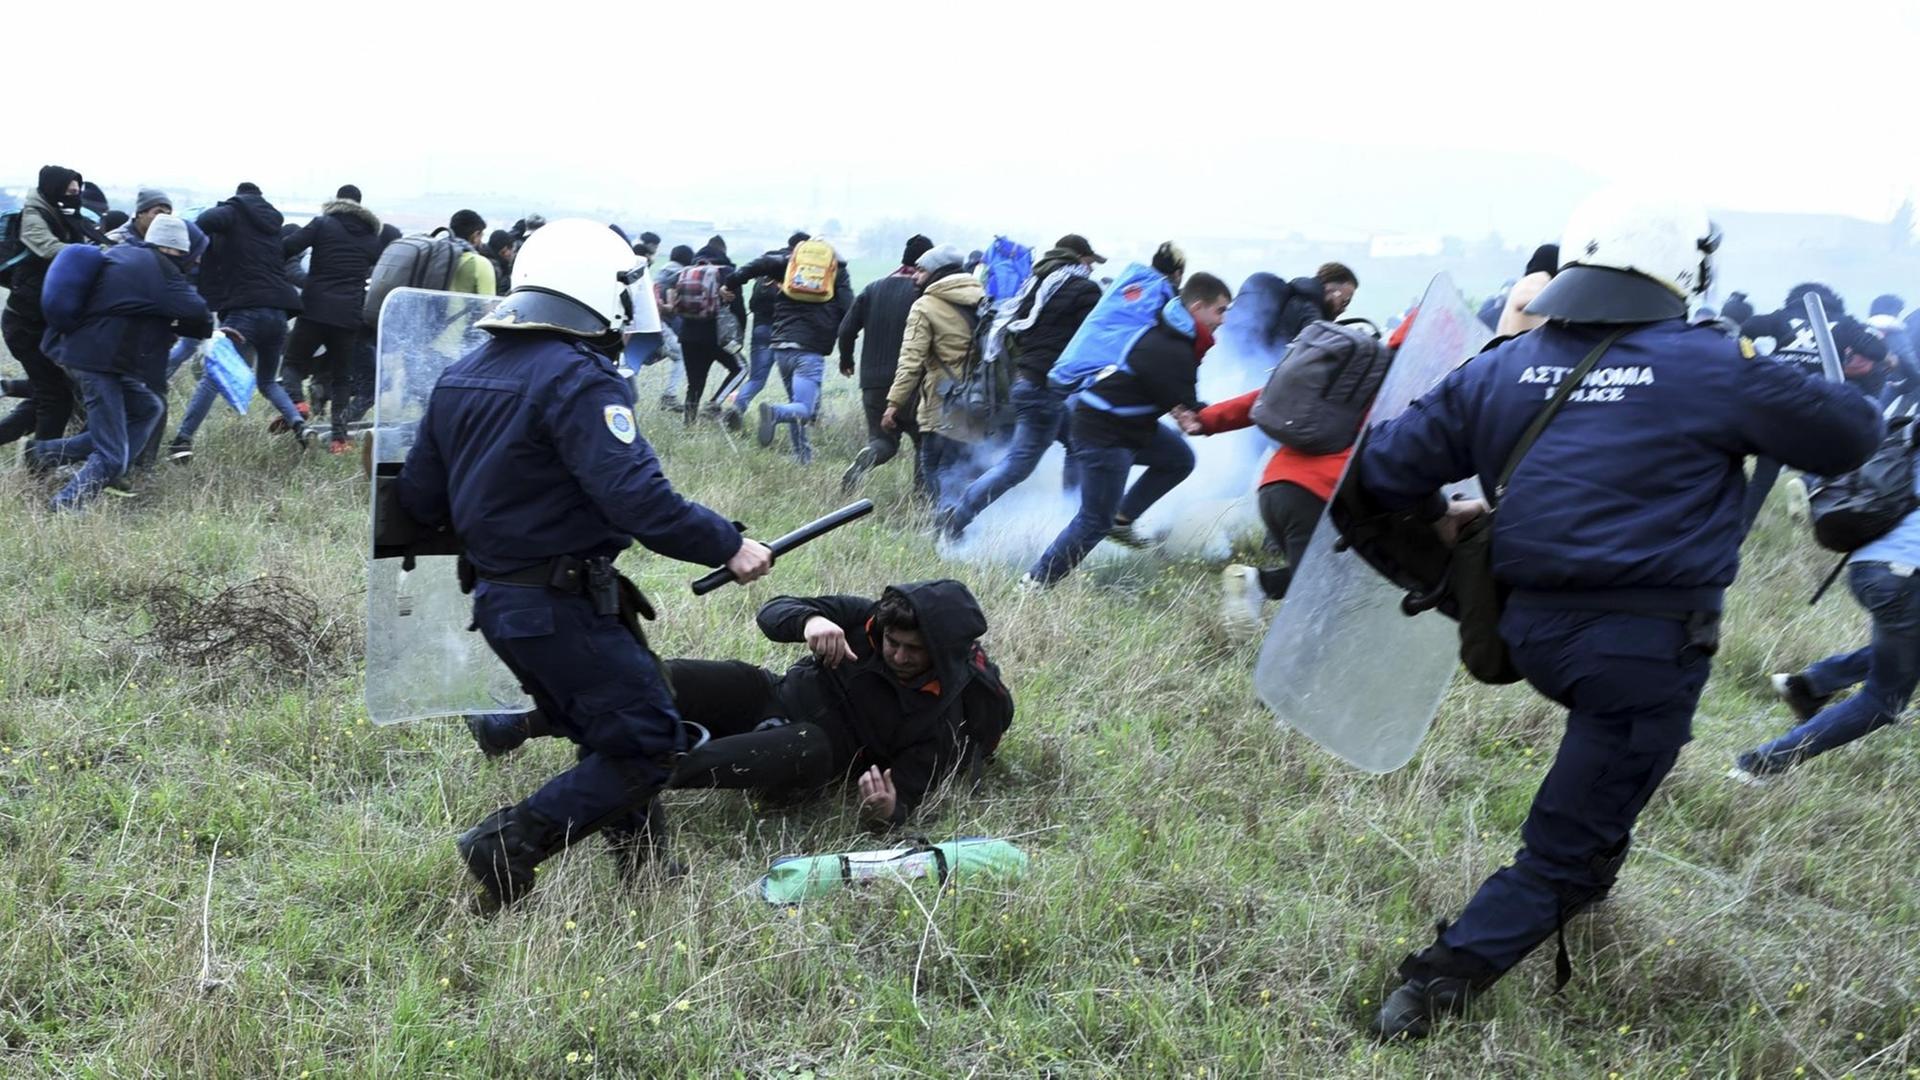 Mit Schlagstöcken bewaffnete Polizisten jagen Flüchtlinge über eine Wiese.